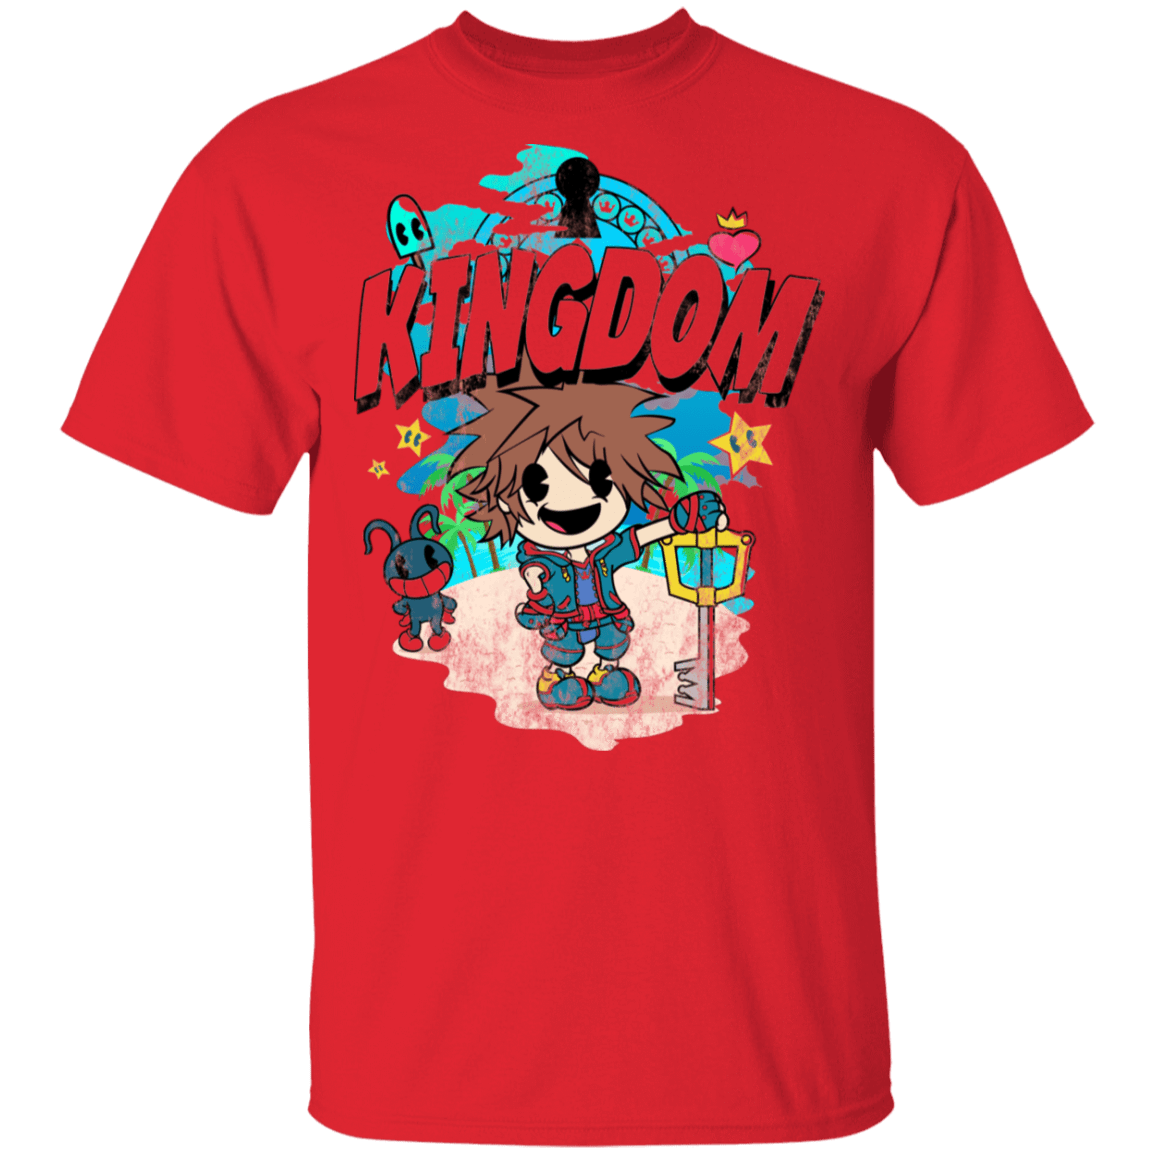 T-Shirts Red / S Kingdom Cartoon T-Shirt